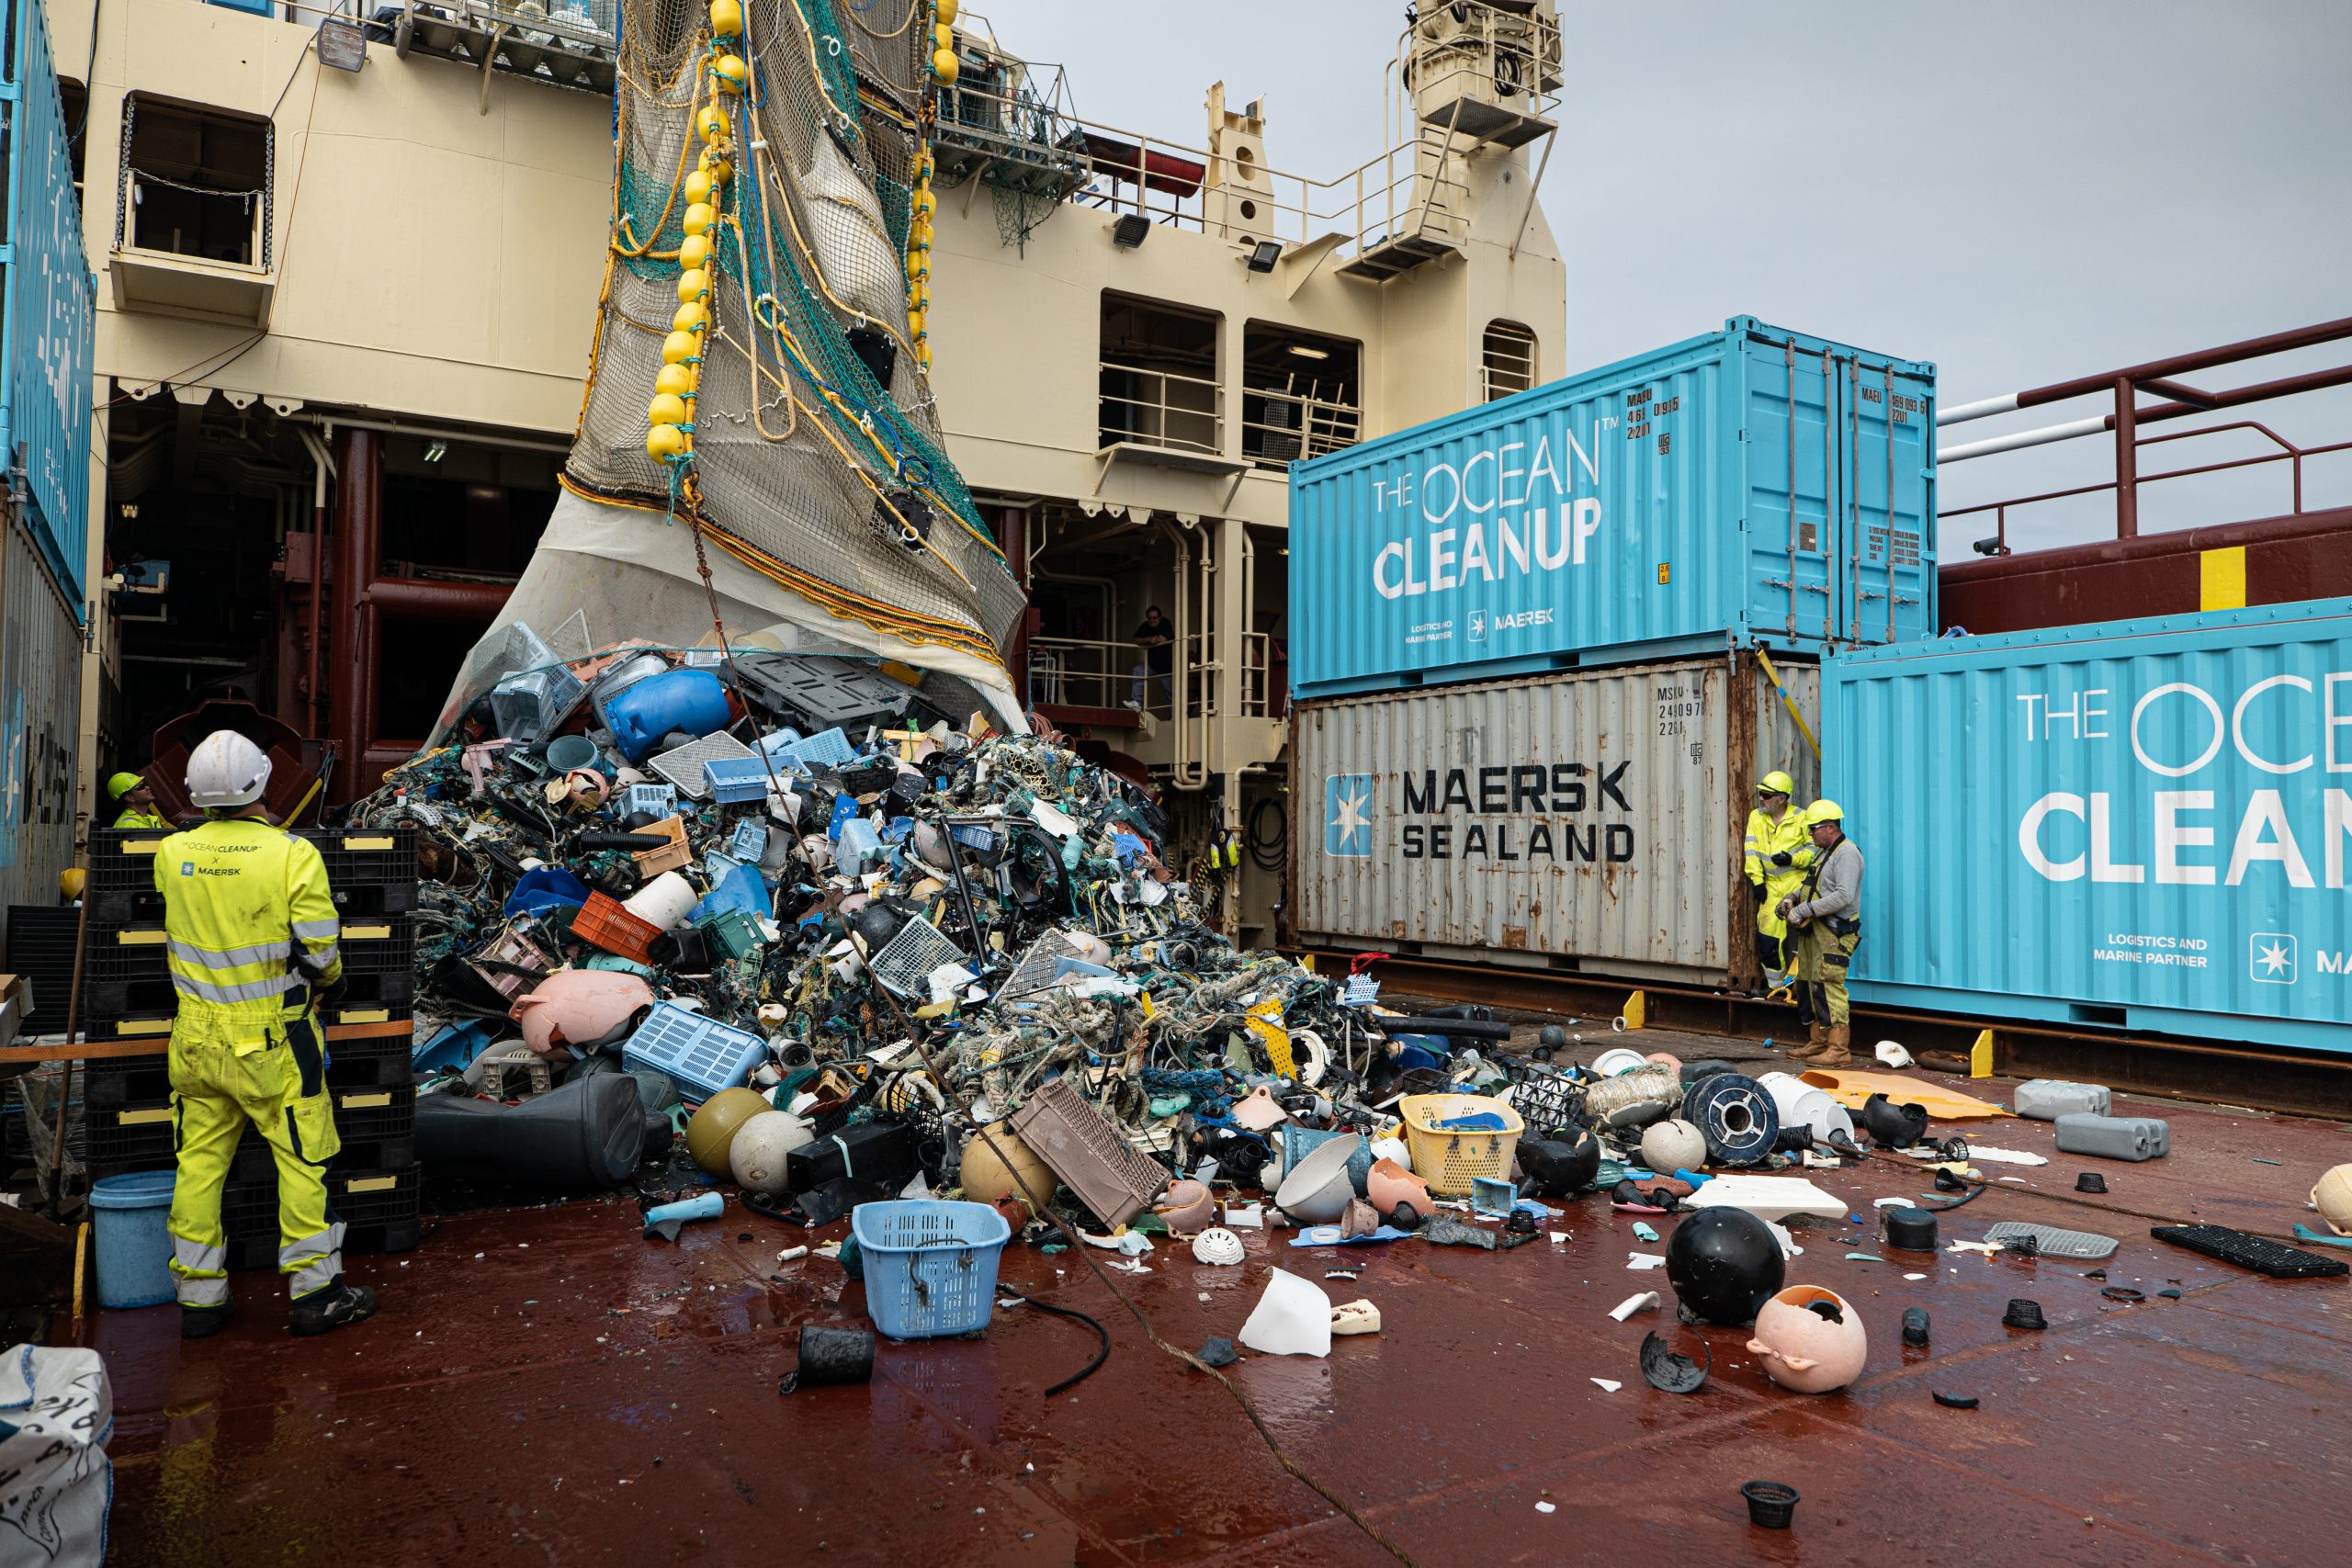 Navio da Ocean Cleanup recolhe detritos da Grande Mancha de Lixo do Pacífico: pesquisa constatou espécies costeiras se reproduzindo no meio do oceano (Foto: The Ocean Cleanup)